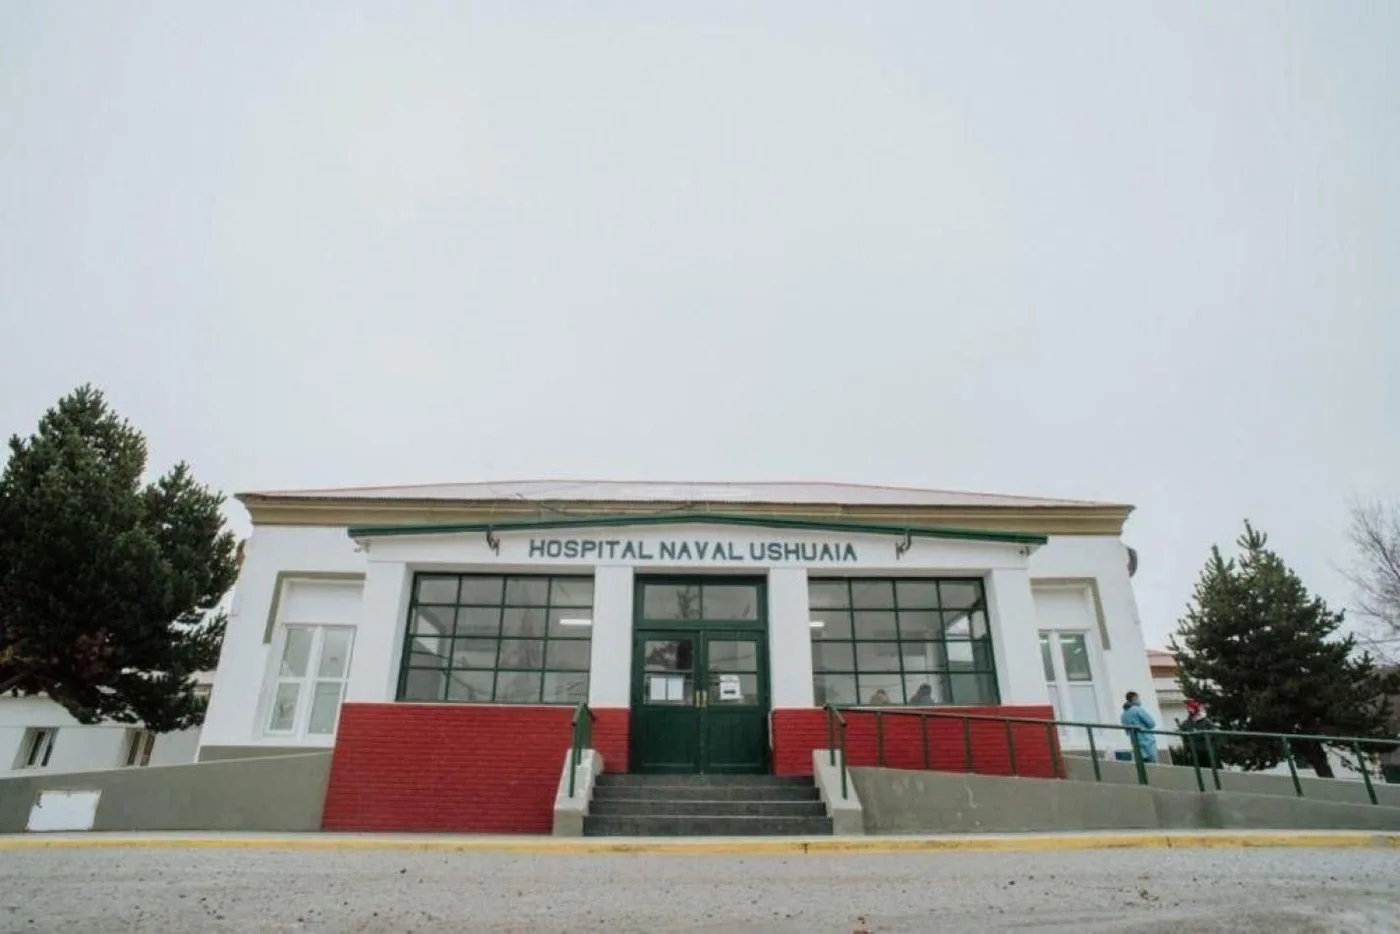 Hospital Naval de la ciudad de Ushuaia Tierra del Fuego.